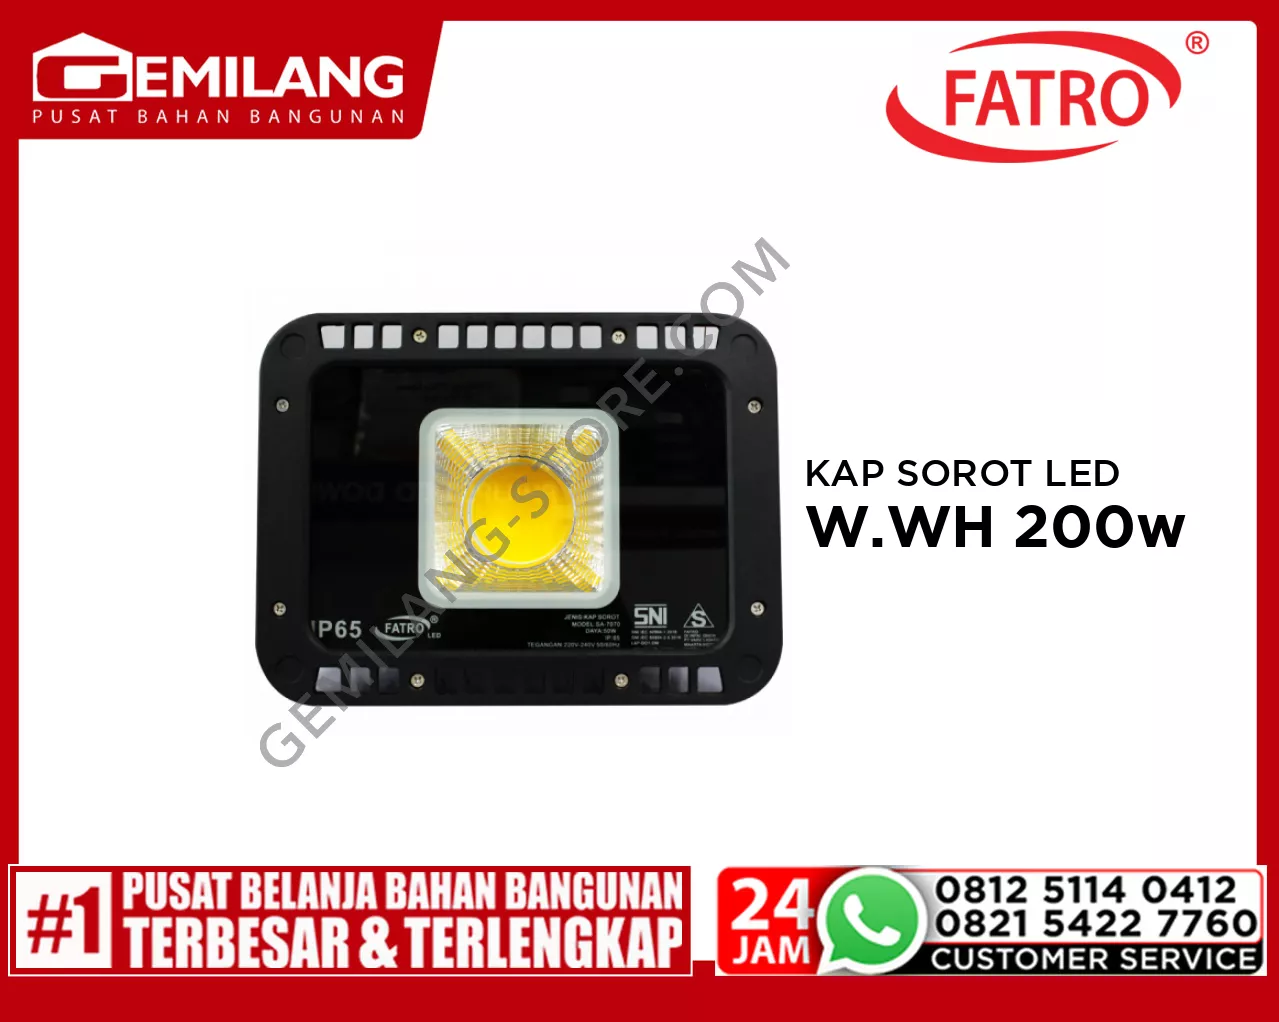 FATRO KAP SOROT LED SA 7070 W.WH 200w